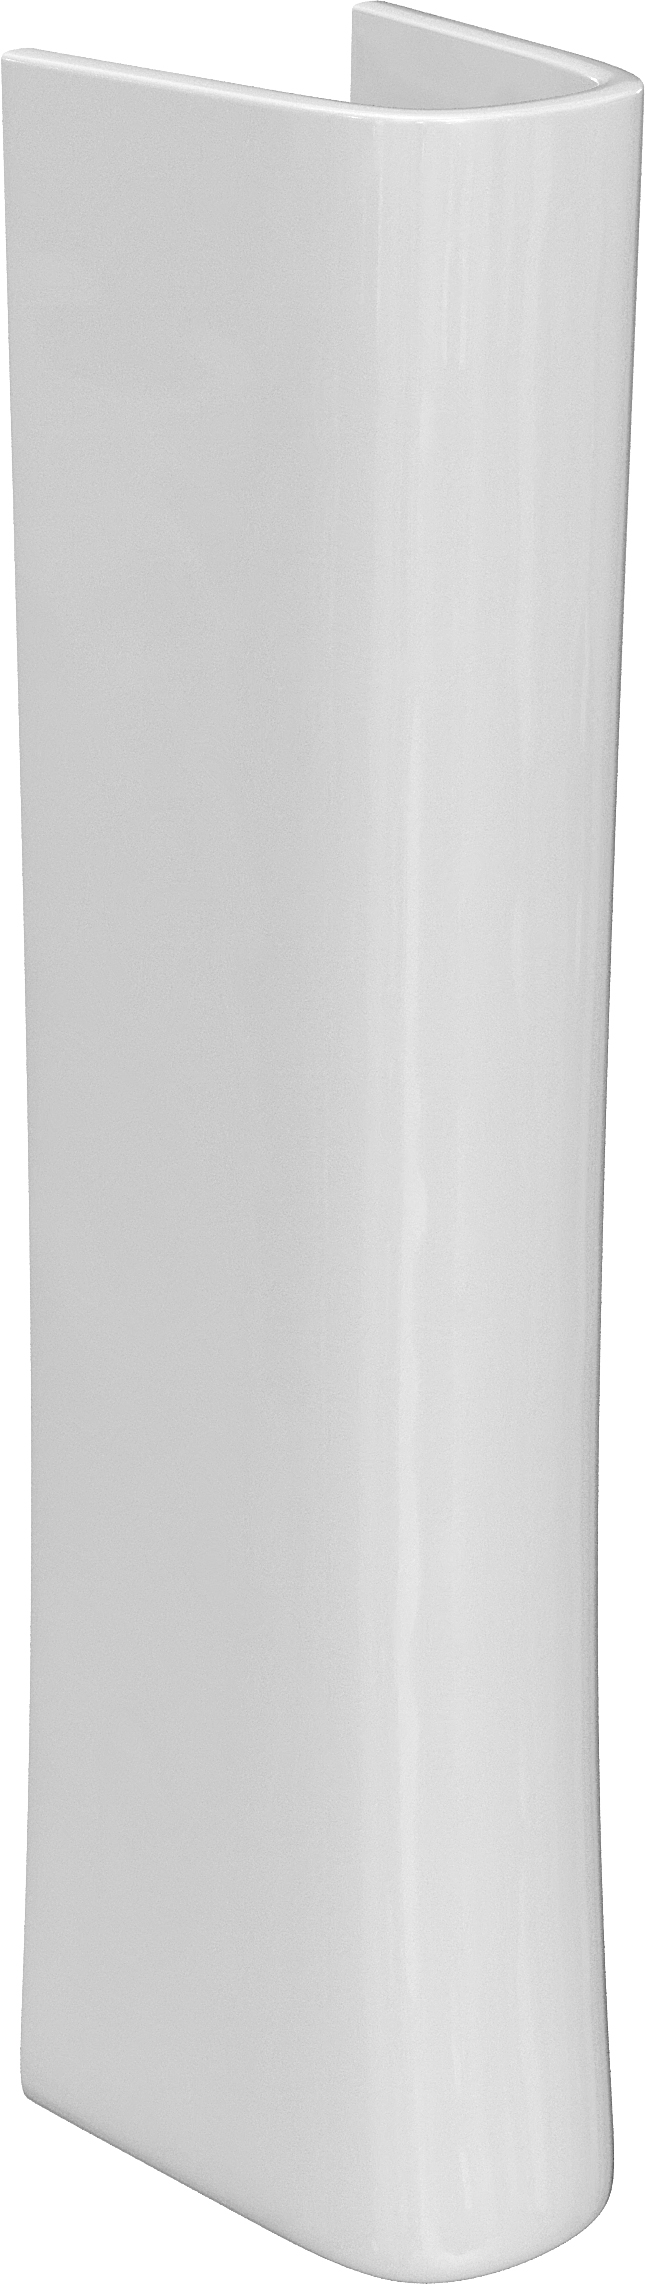 Комплект раковина с пьедесталом  Раковина STWORKI Дублин 45 + Зеркало-шкаф STWORKI Мальмё МВК074 45, с подсветкой, белый, прямоугольный, навесной, ова 560890 - 9